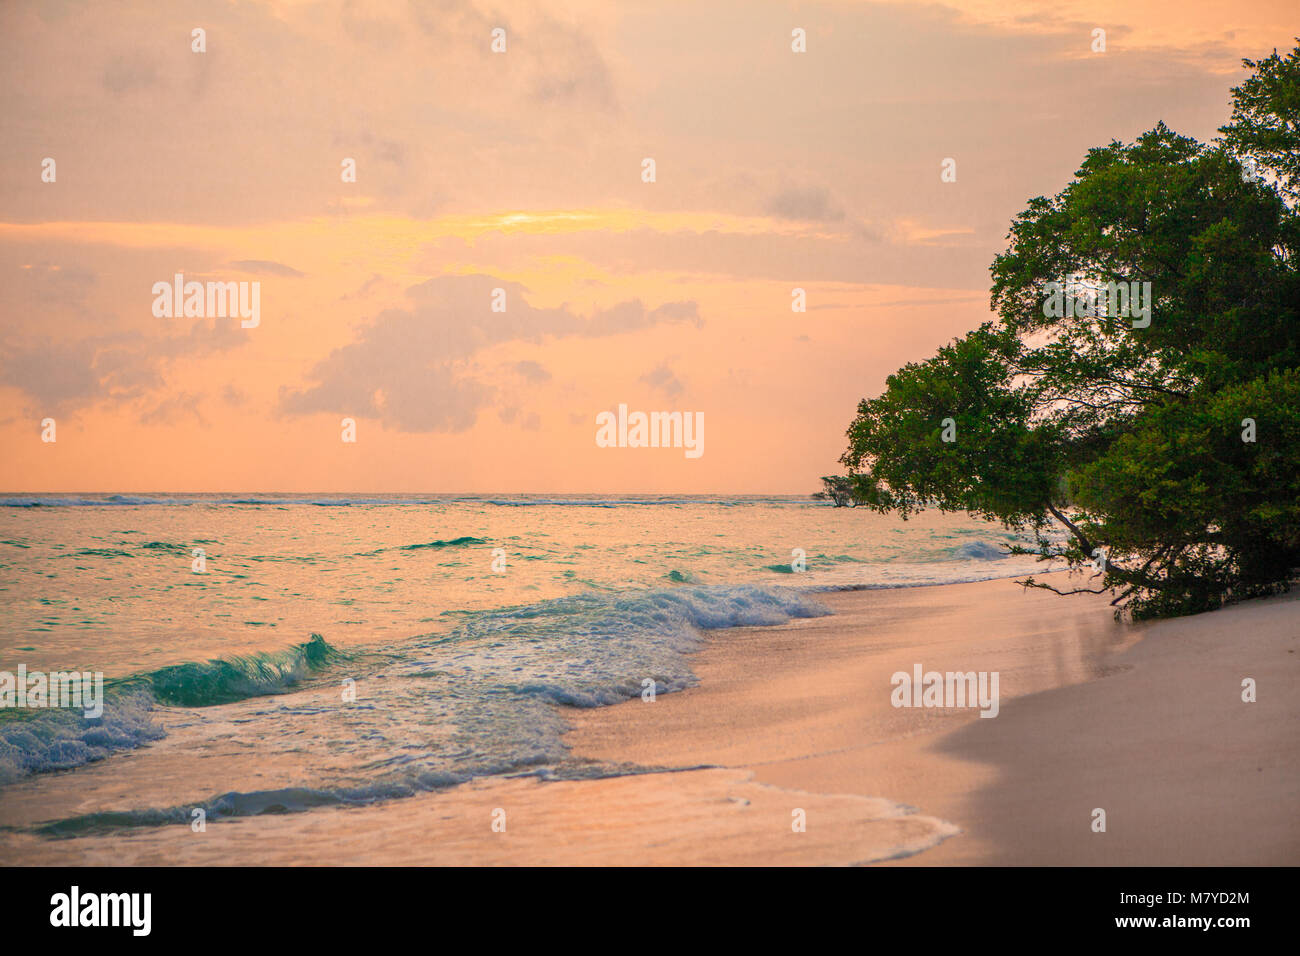 Deserta spiaggia celeste, con acque turchesi e rosa cielo giallo al tramonto, con alberi sulla sabbia vicino al mare Foto Stock